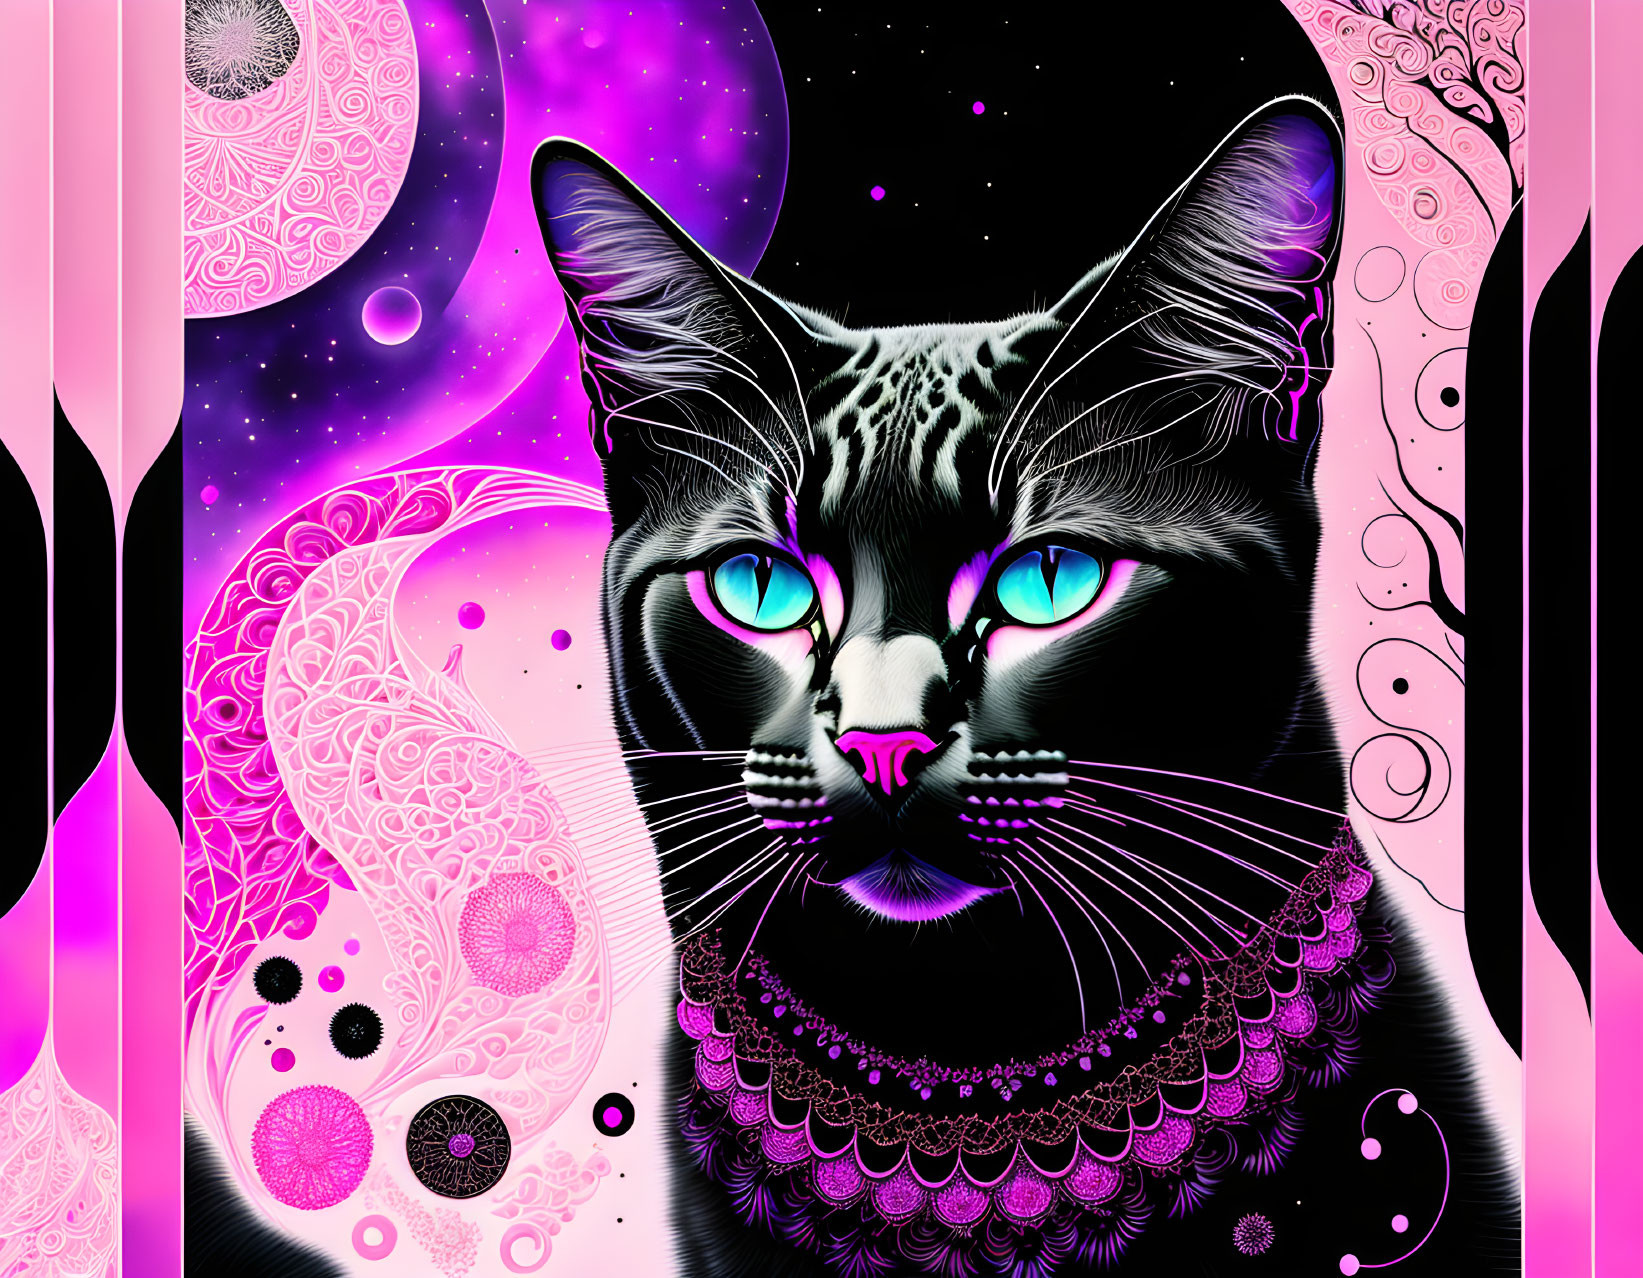 Cosmic Cat: Blue Eyes in Pink & Black